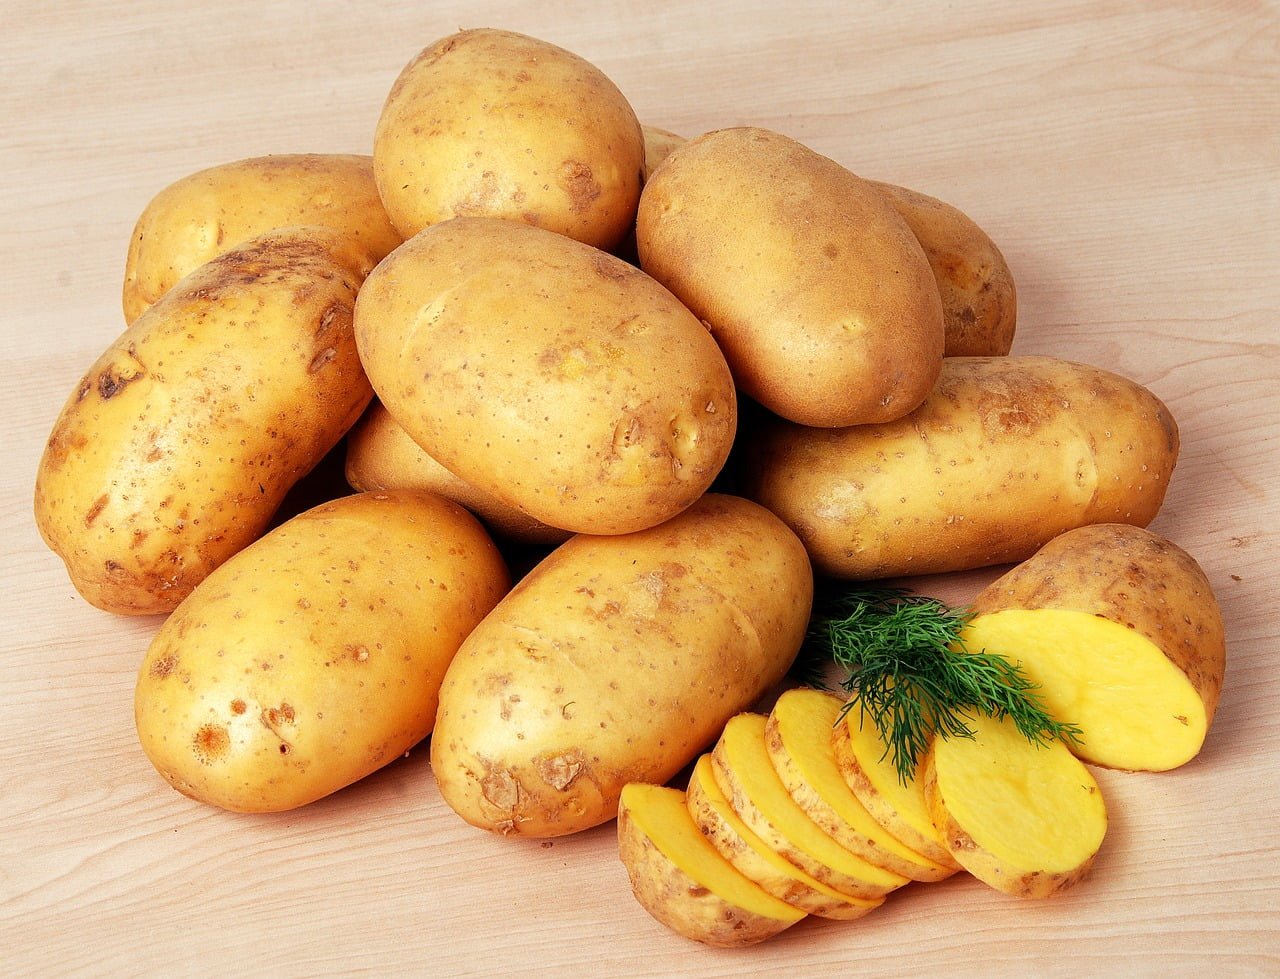 Chất solanin có trong củ khoai tây là một chất có khả năng gây độc